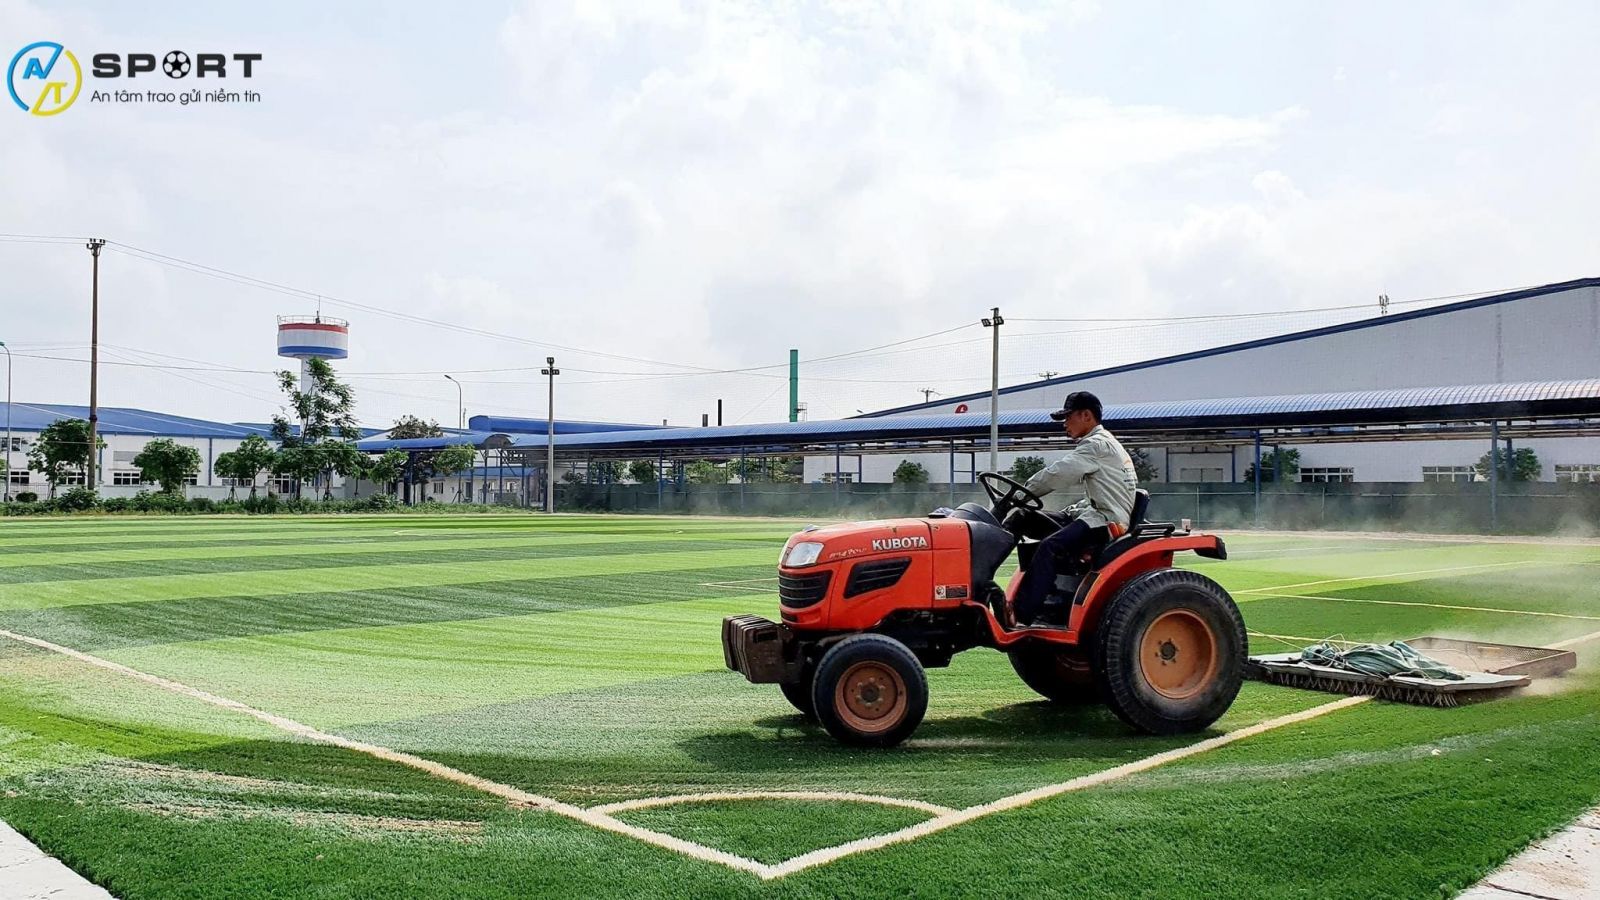 Thi công sân bóng cỏ nhân tạo ở Thái Bình